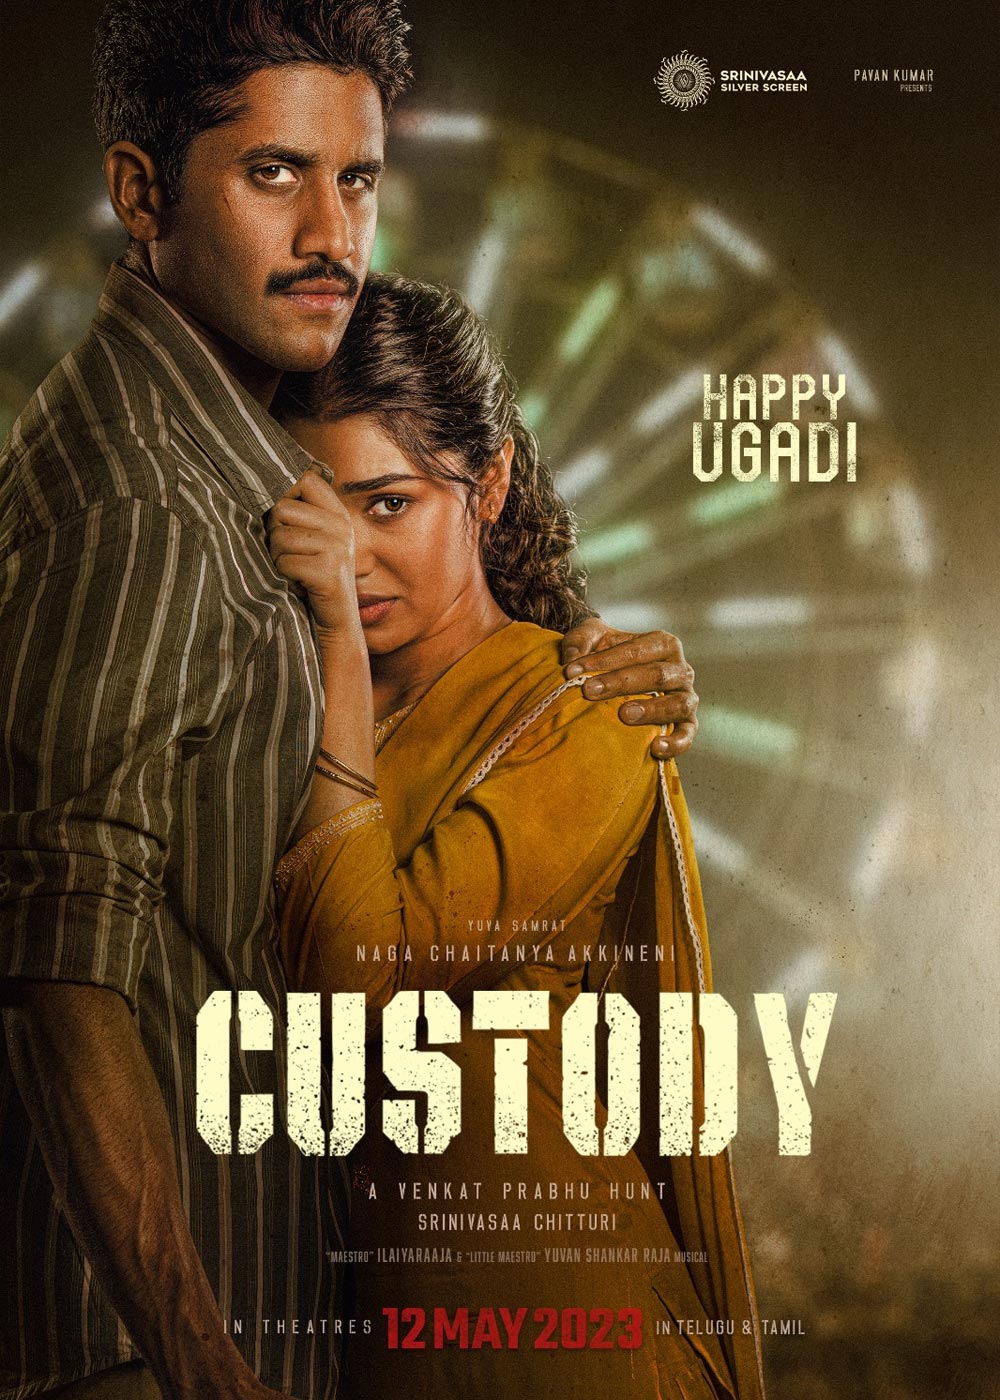 custody movie review telugu 360